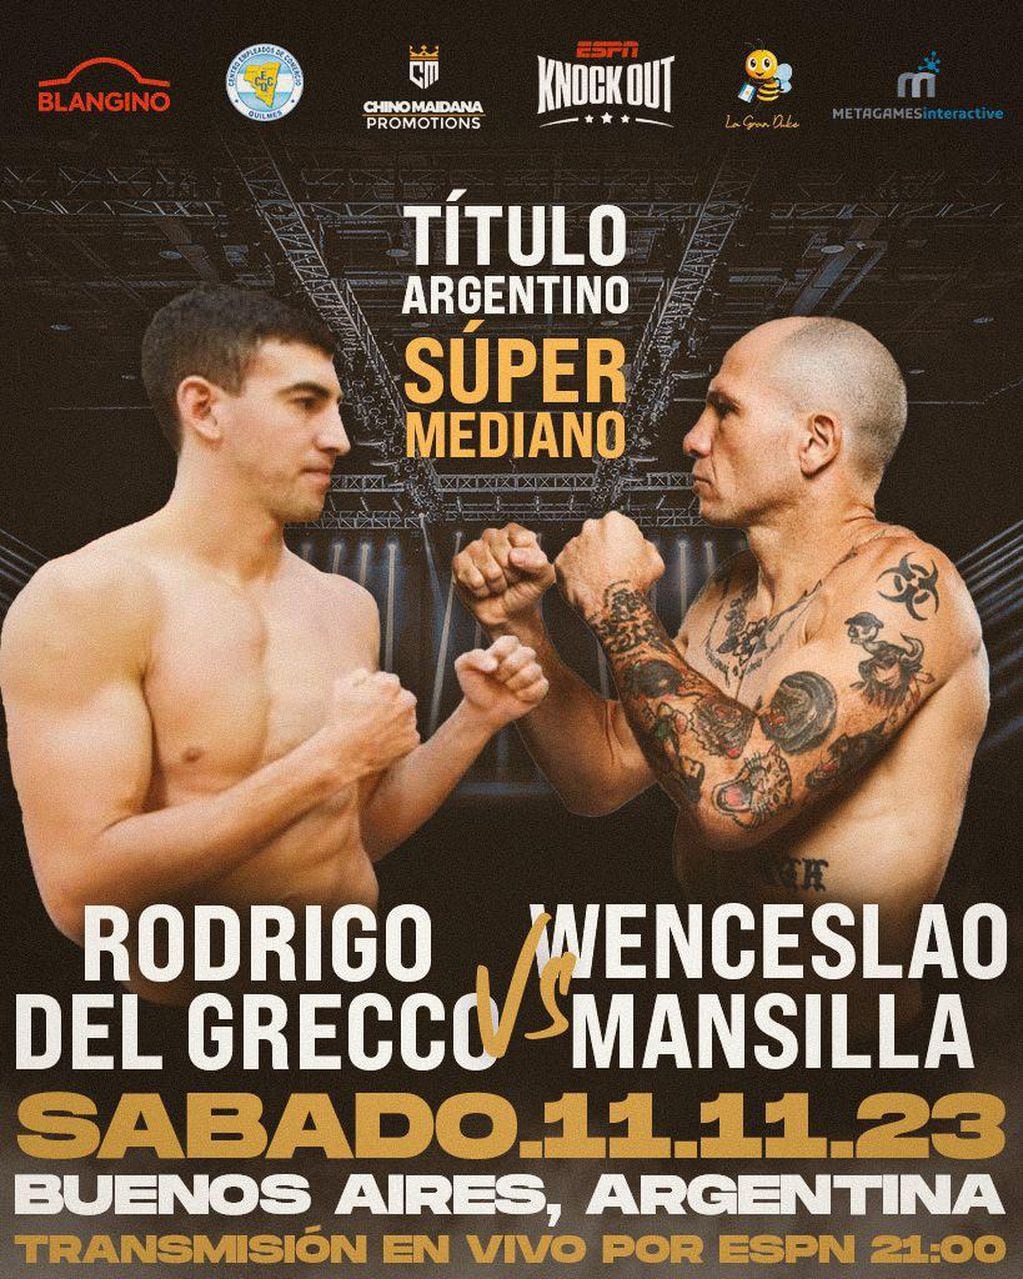 Wenceslao Mansilla pelea por título Argentino Super Mediano.